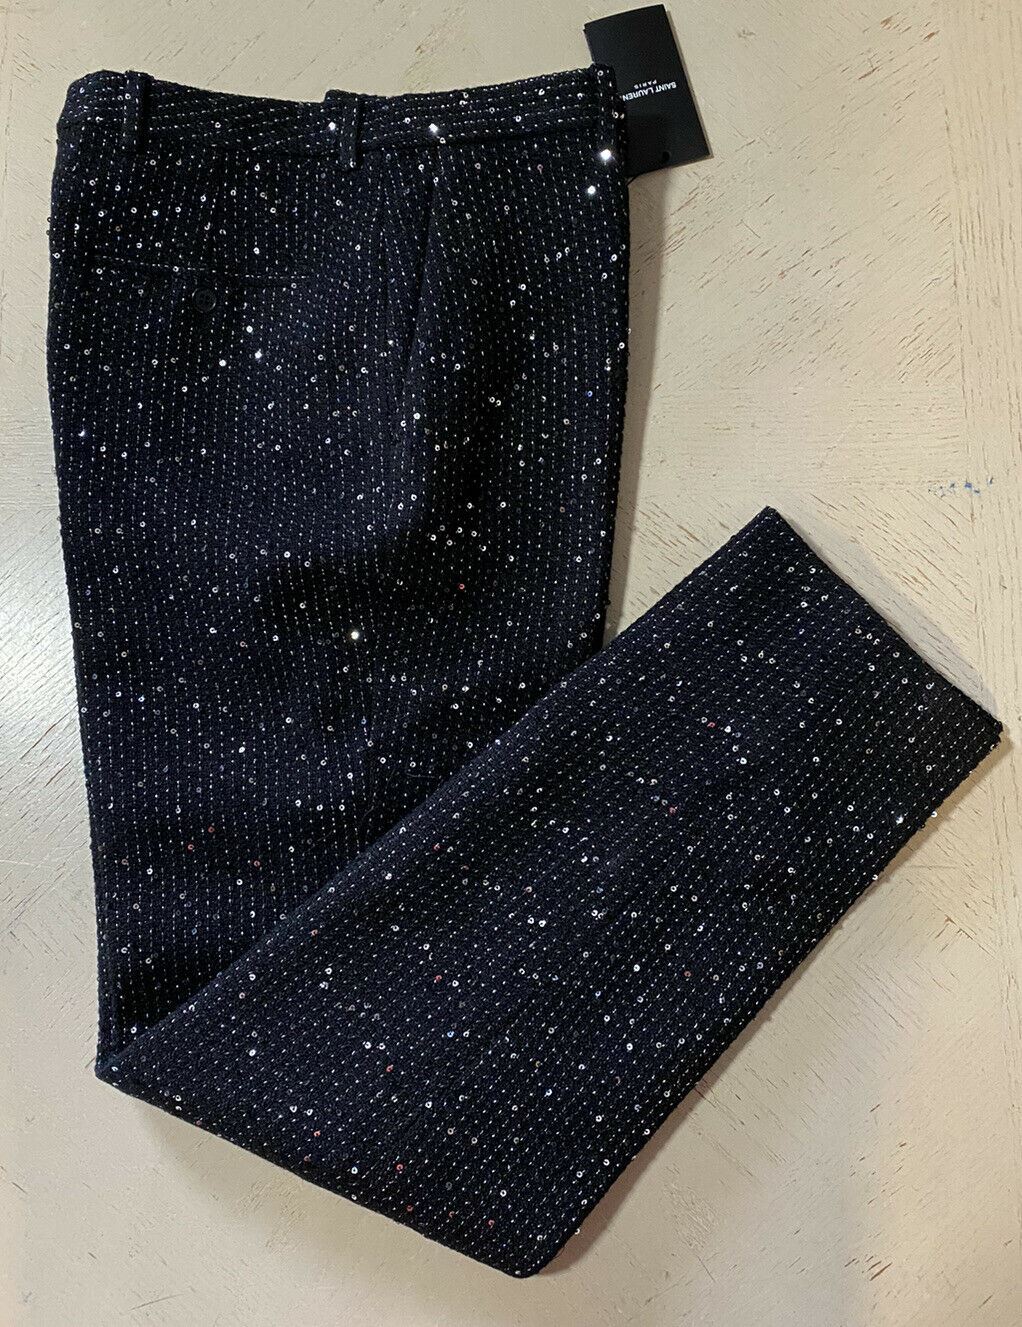 NWT $1650 Saint Laurent Men’s Dress Pants Black 34 US ( 50 Eu ) Italy 603193